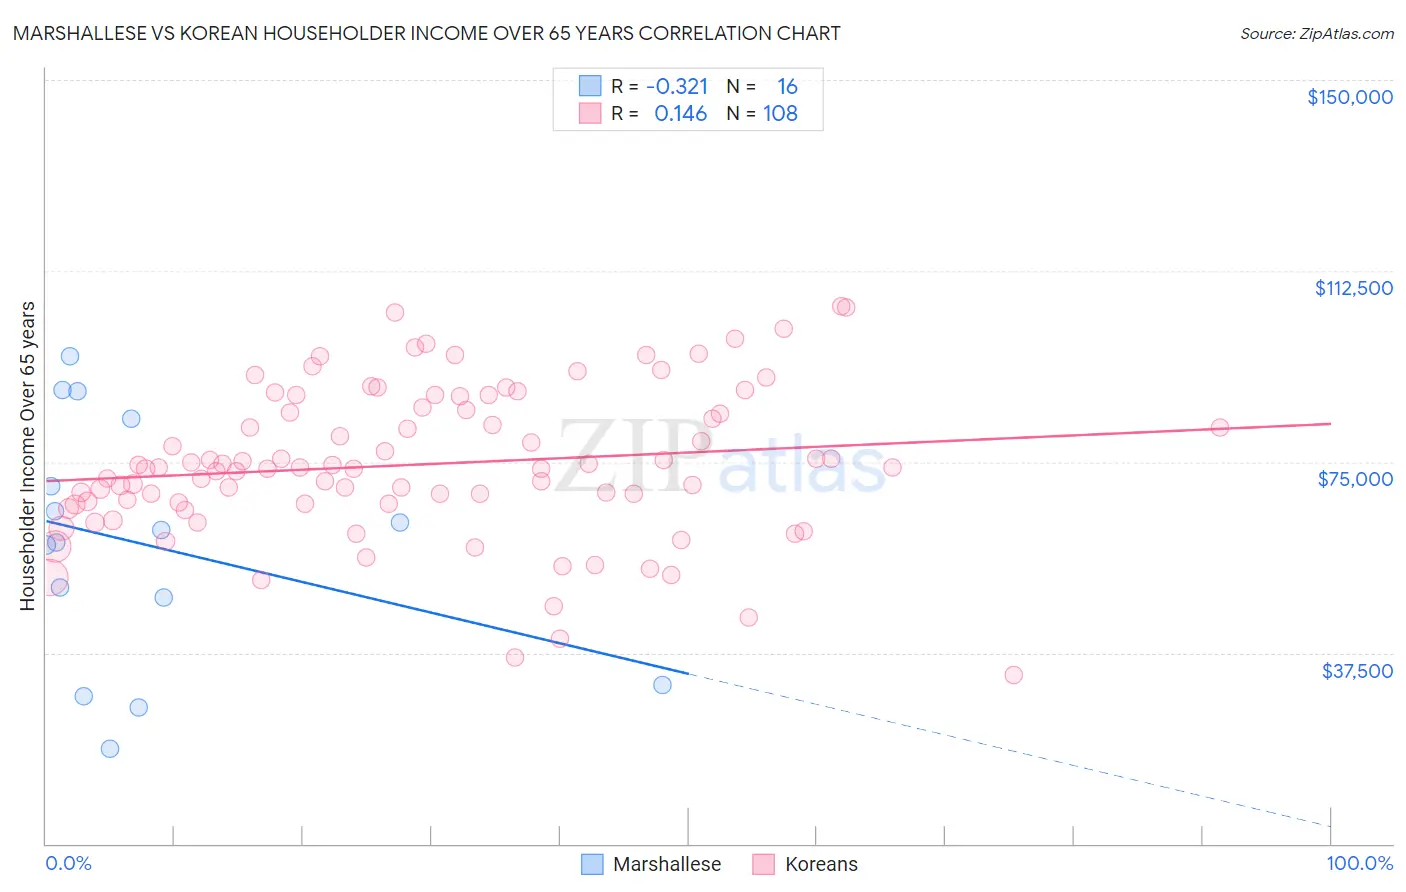 Marshallese vs Korean Householder Income Over 65 years